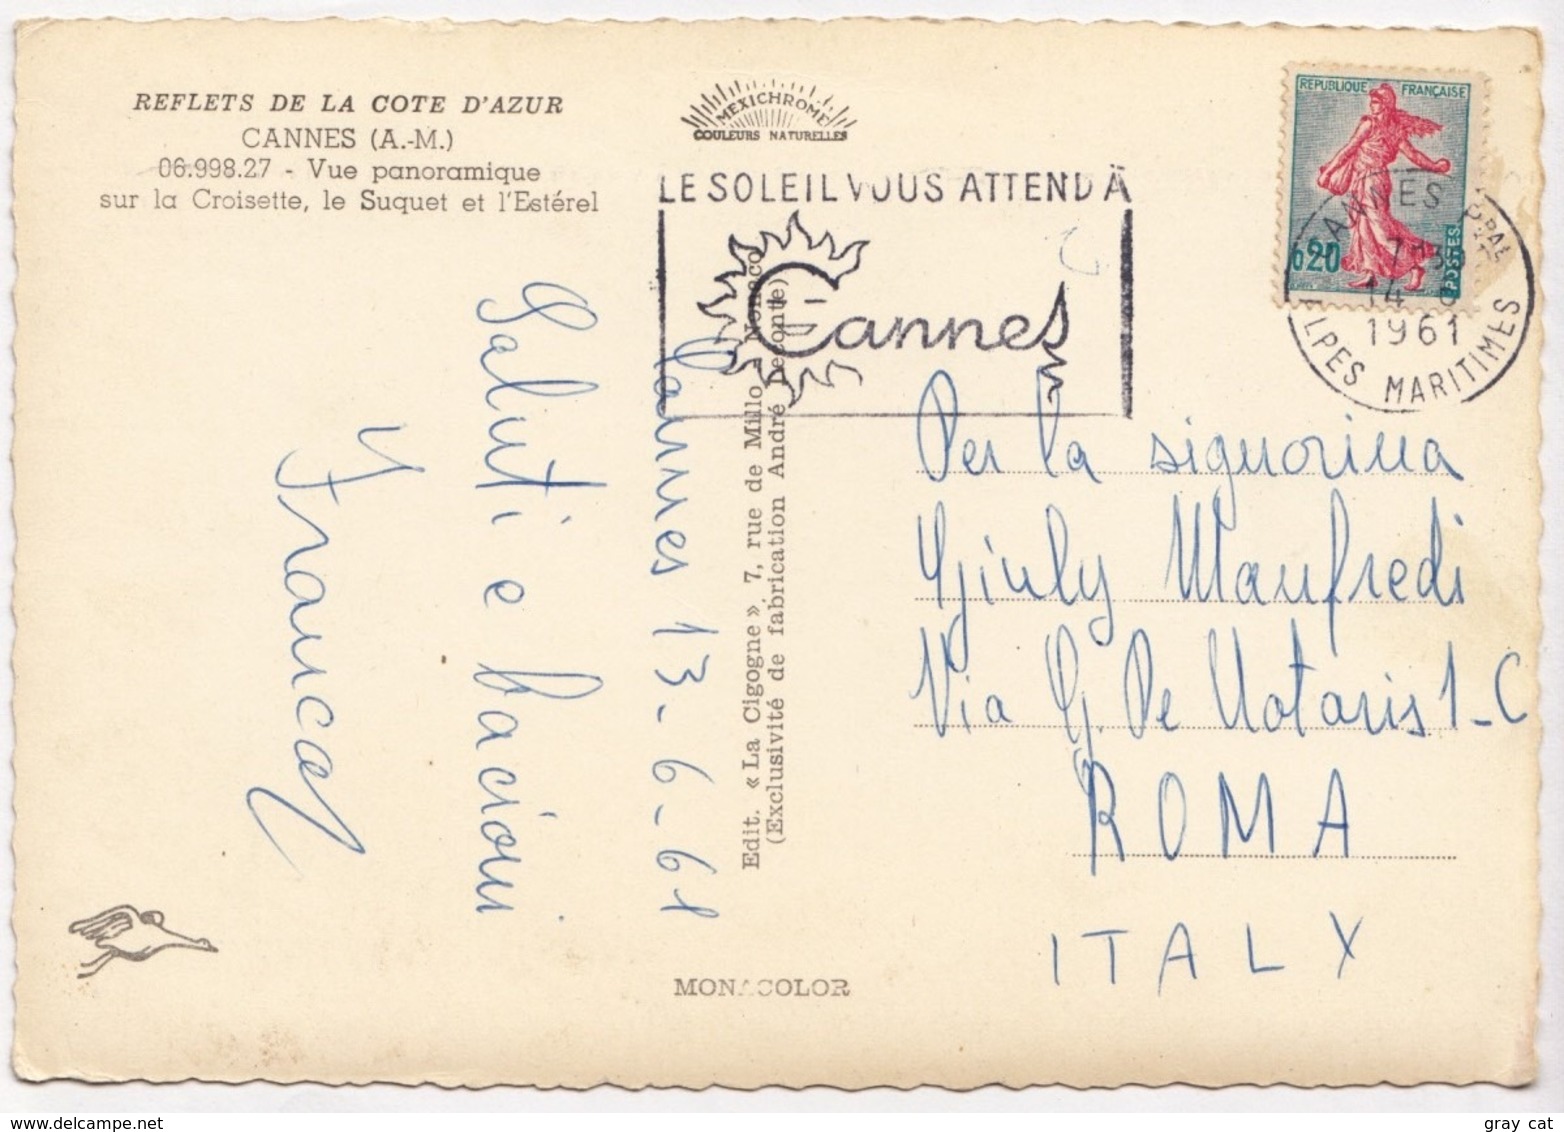 CANNES, Vue Panoramique Sur La Croisette, Le Suquet Et L'Esterel, 1961 Used Postcard [23568] - Cannes